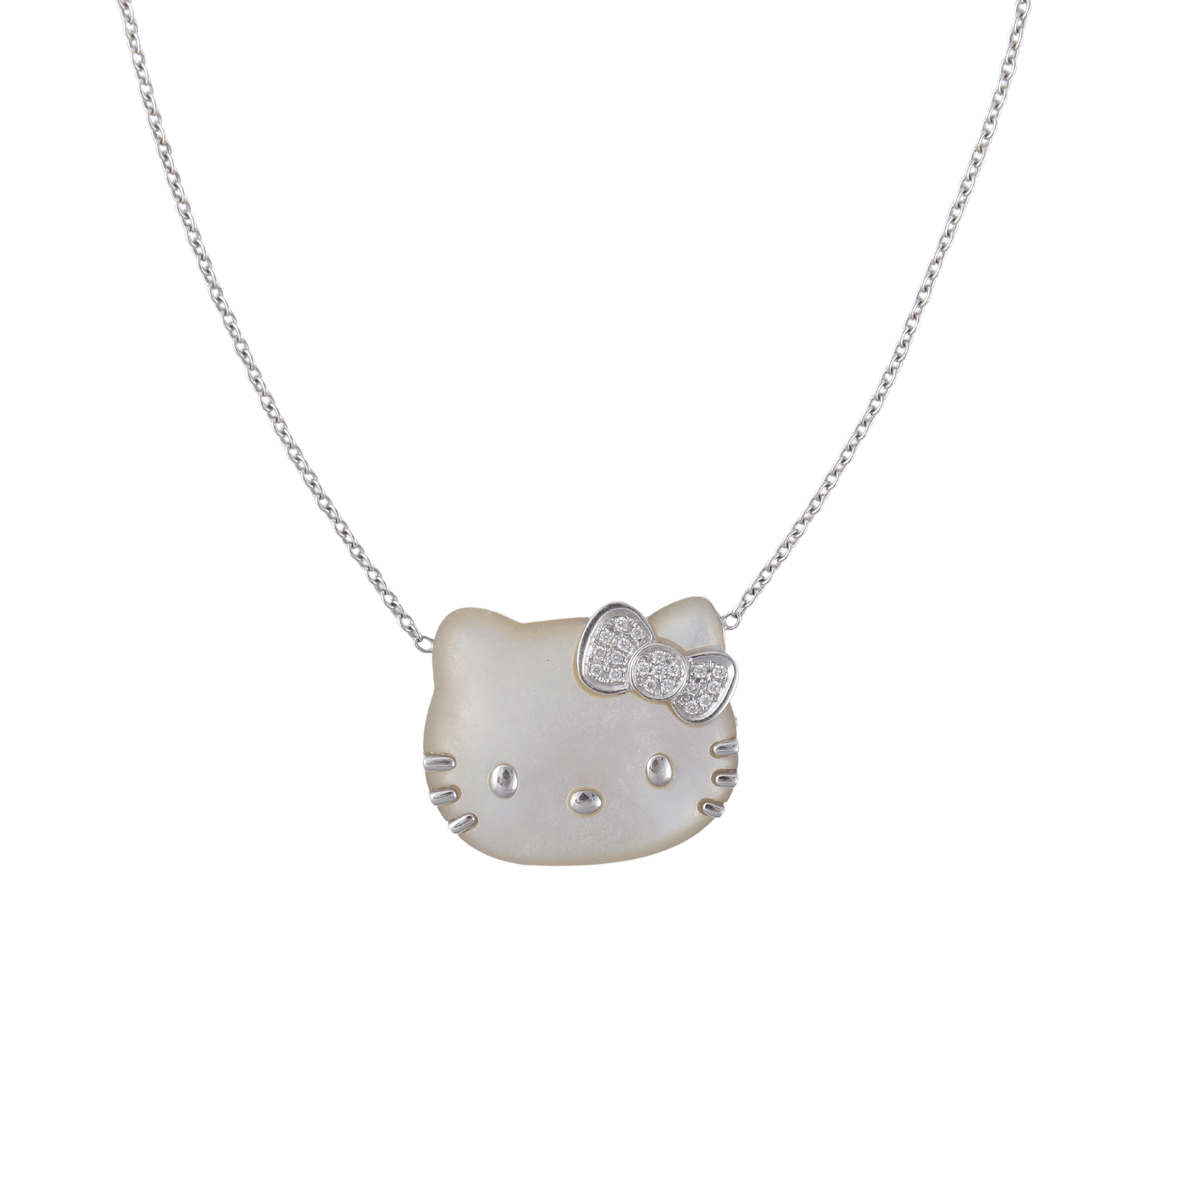 SWAROVSKI Hello Kitty Necklace | eBay